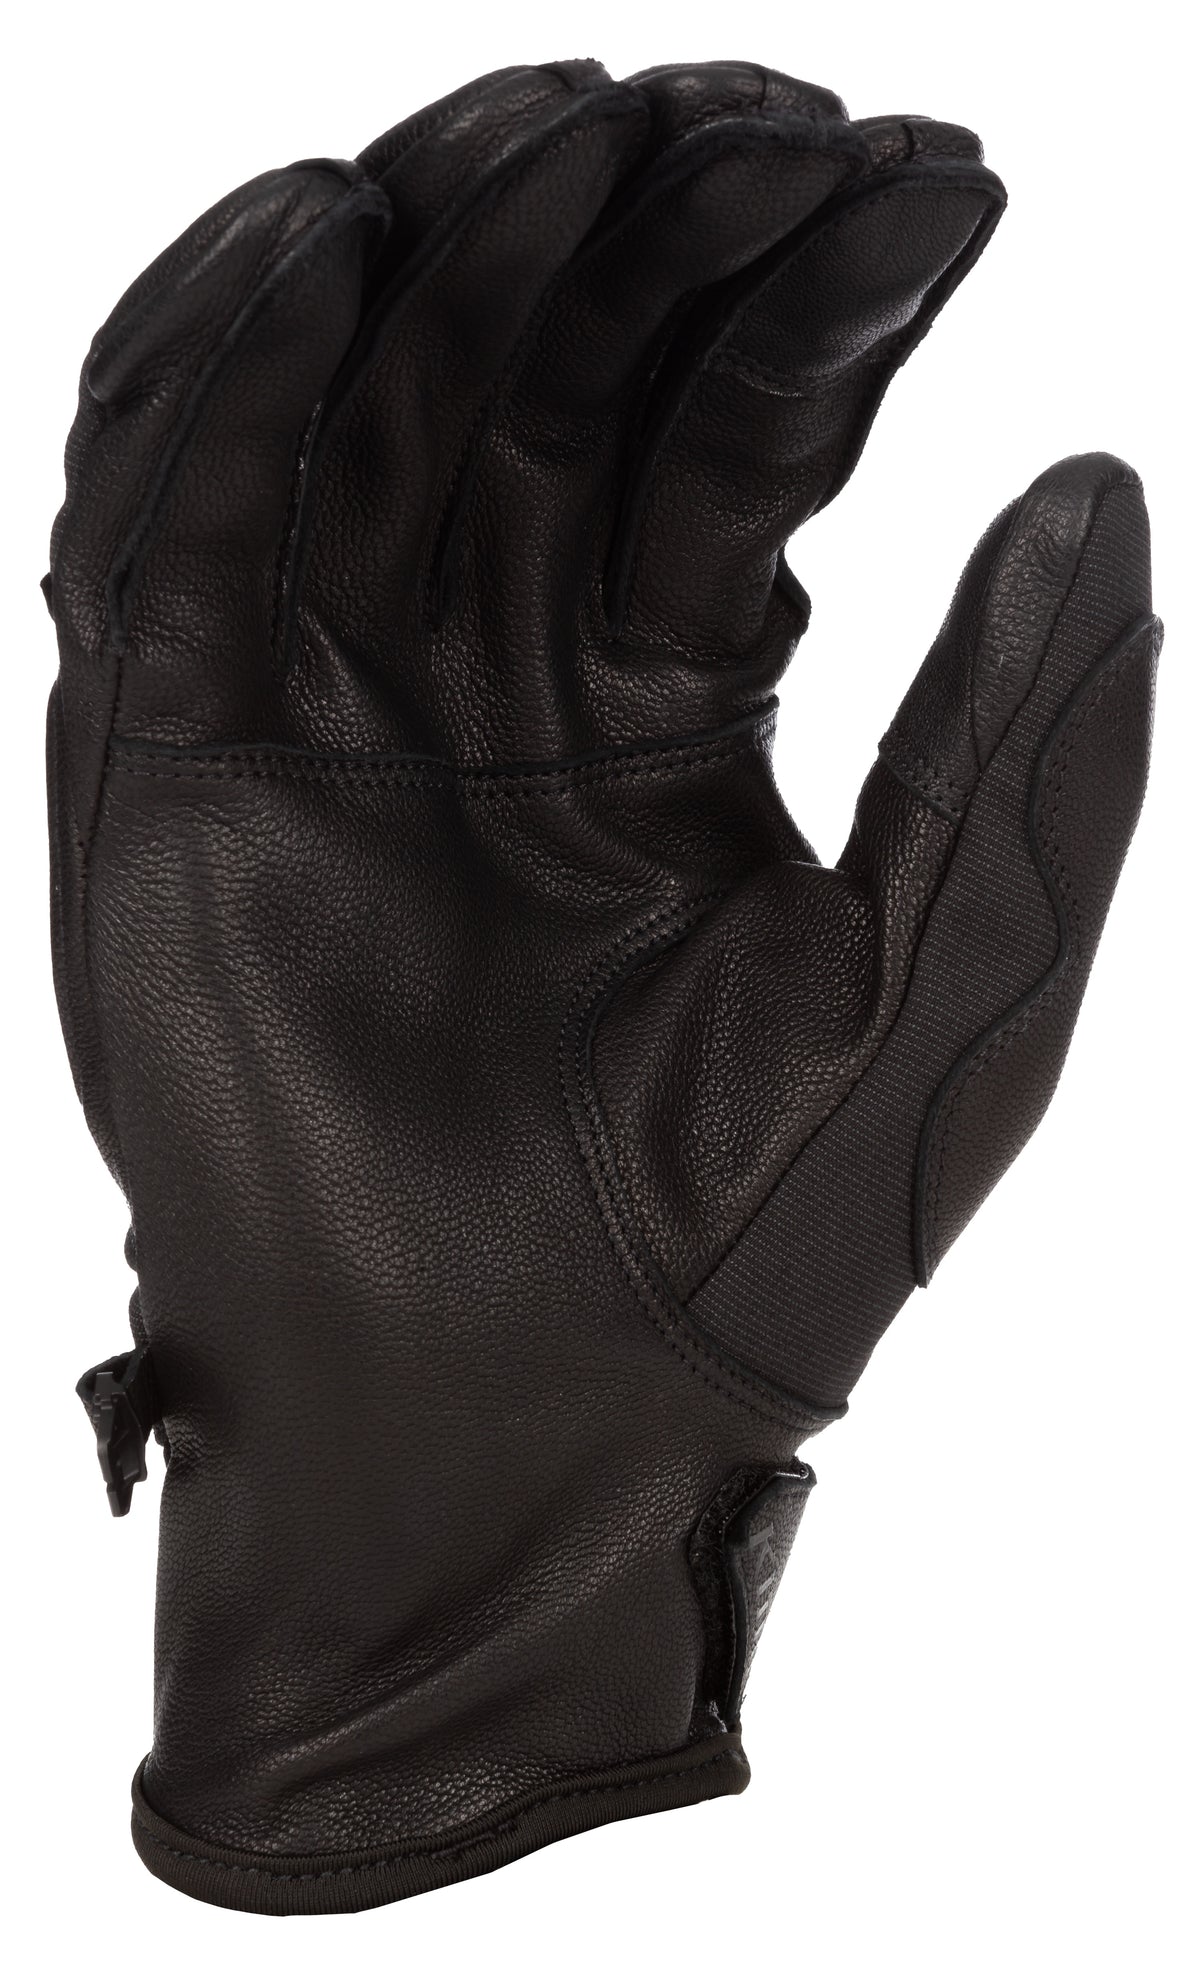 Klim Inversion Pro Glove